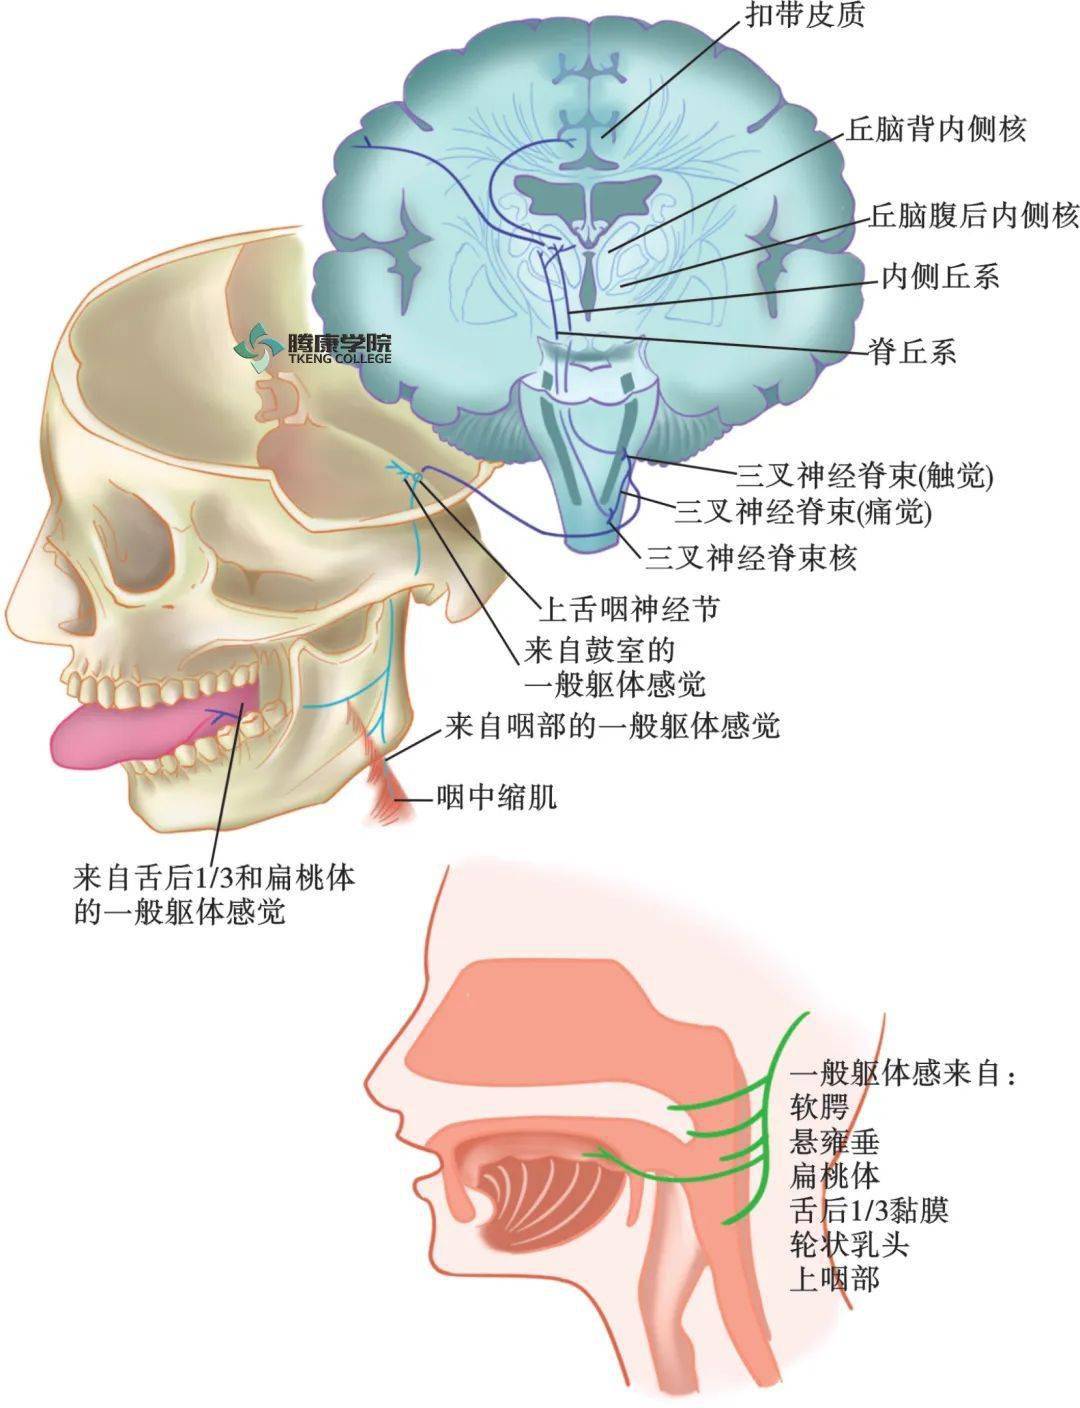 舌神经走行图图片